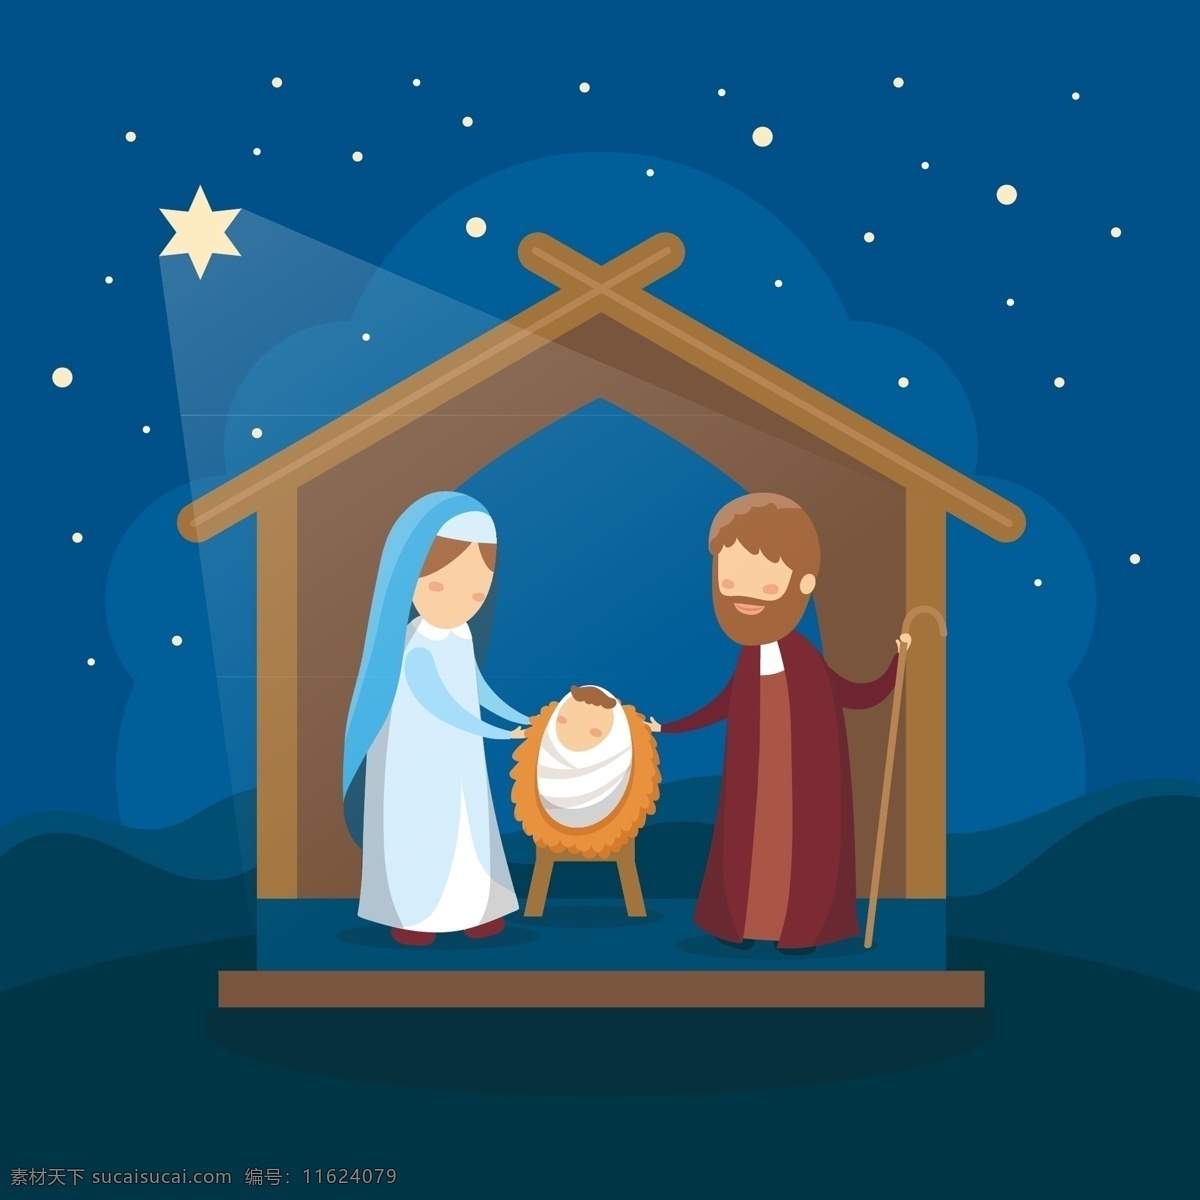 诞生场景 圣诞快乐 圣诞节 圣诞 诞生 生辰 一家人 场景 降生 马槽 宗教 伯利恒 诞生马槽 约瑟夫妇